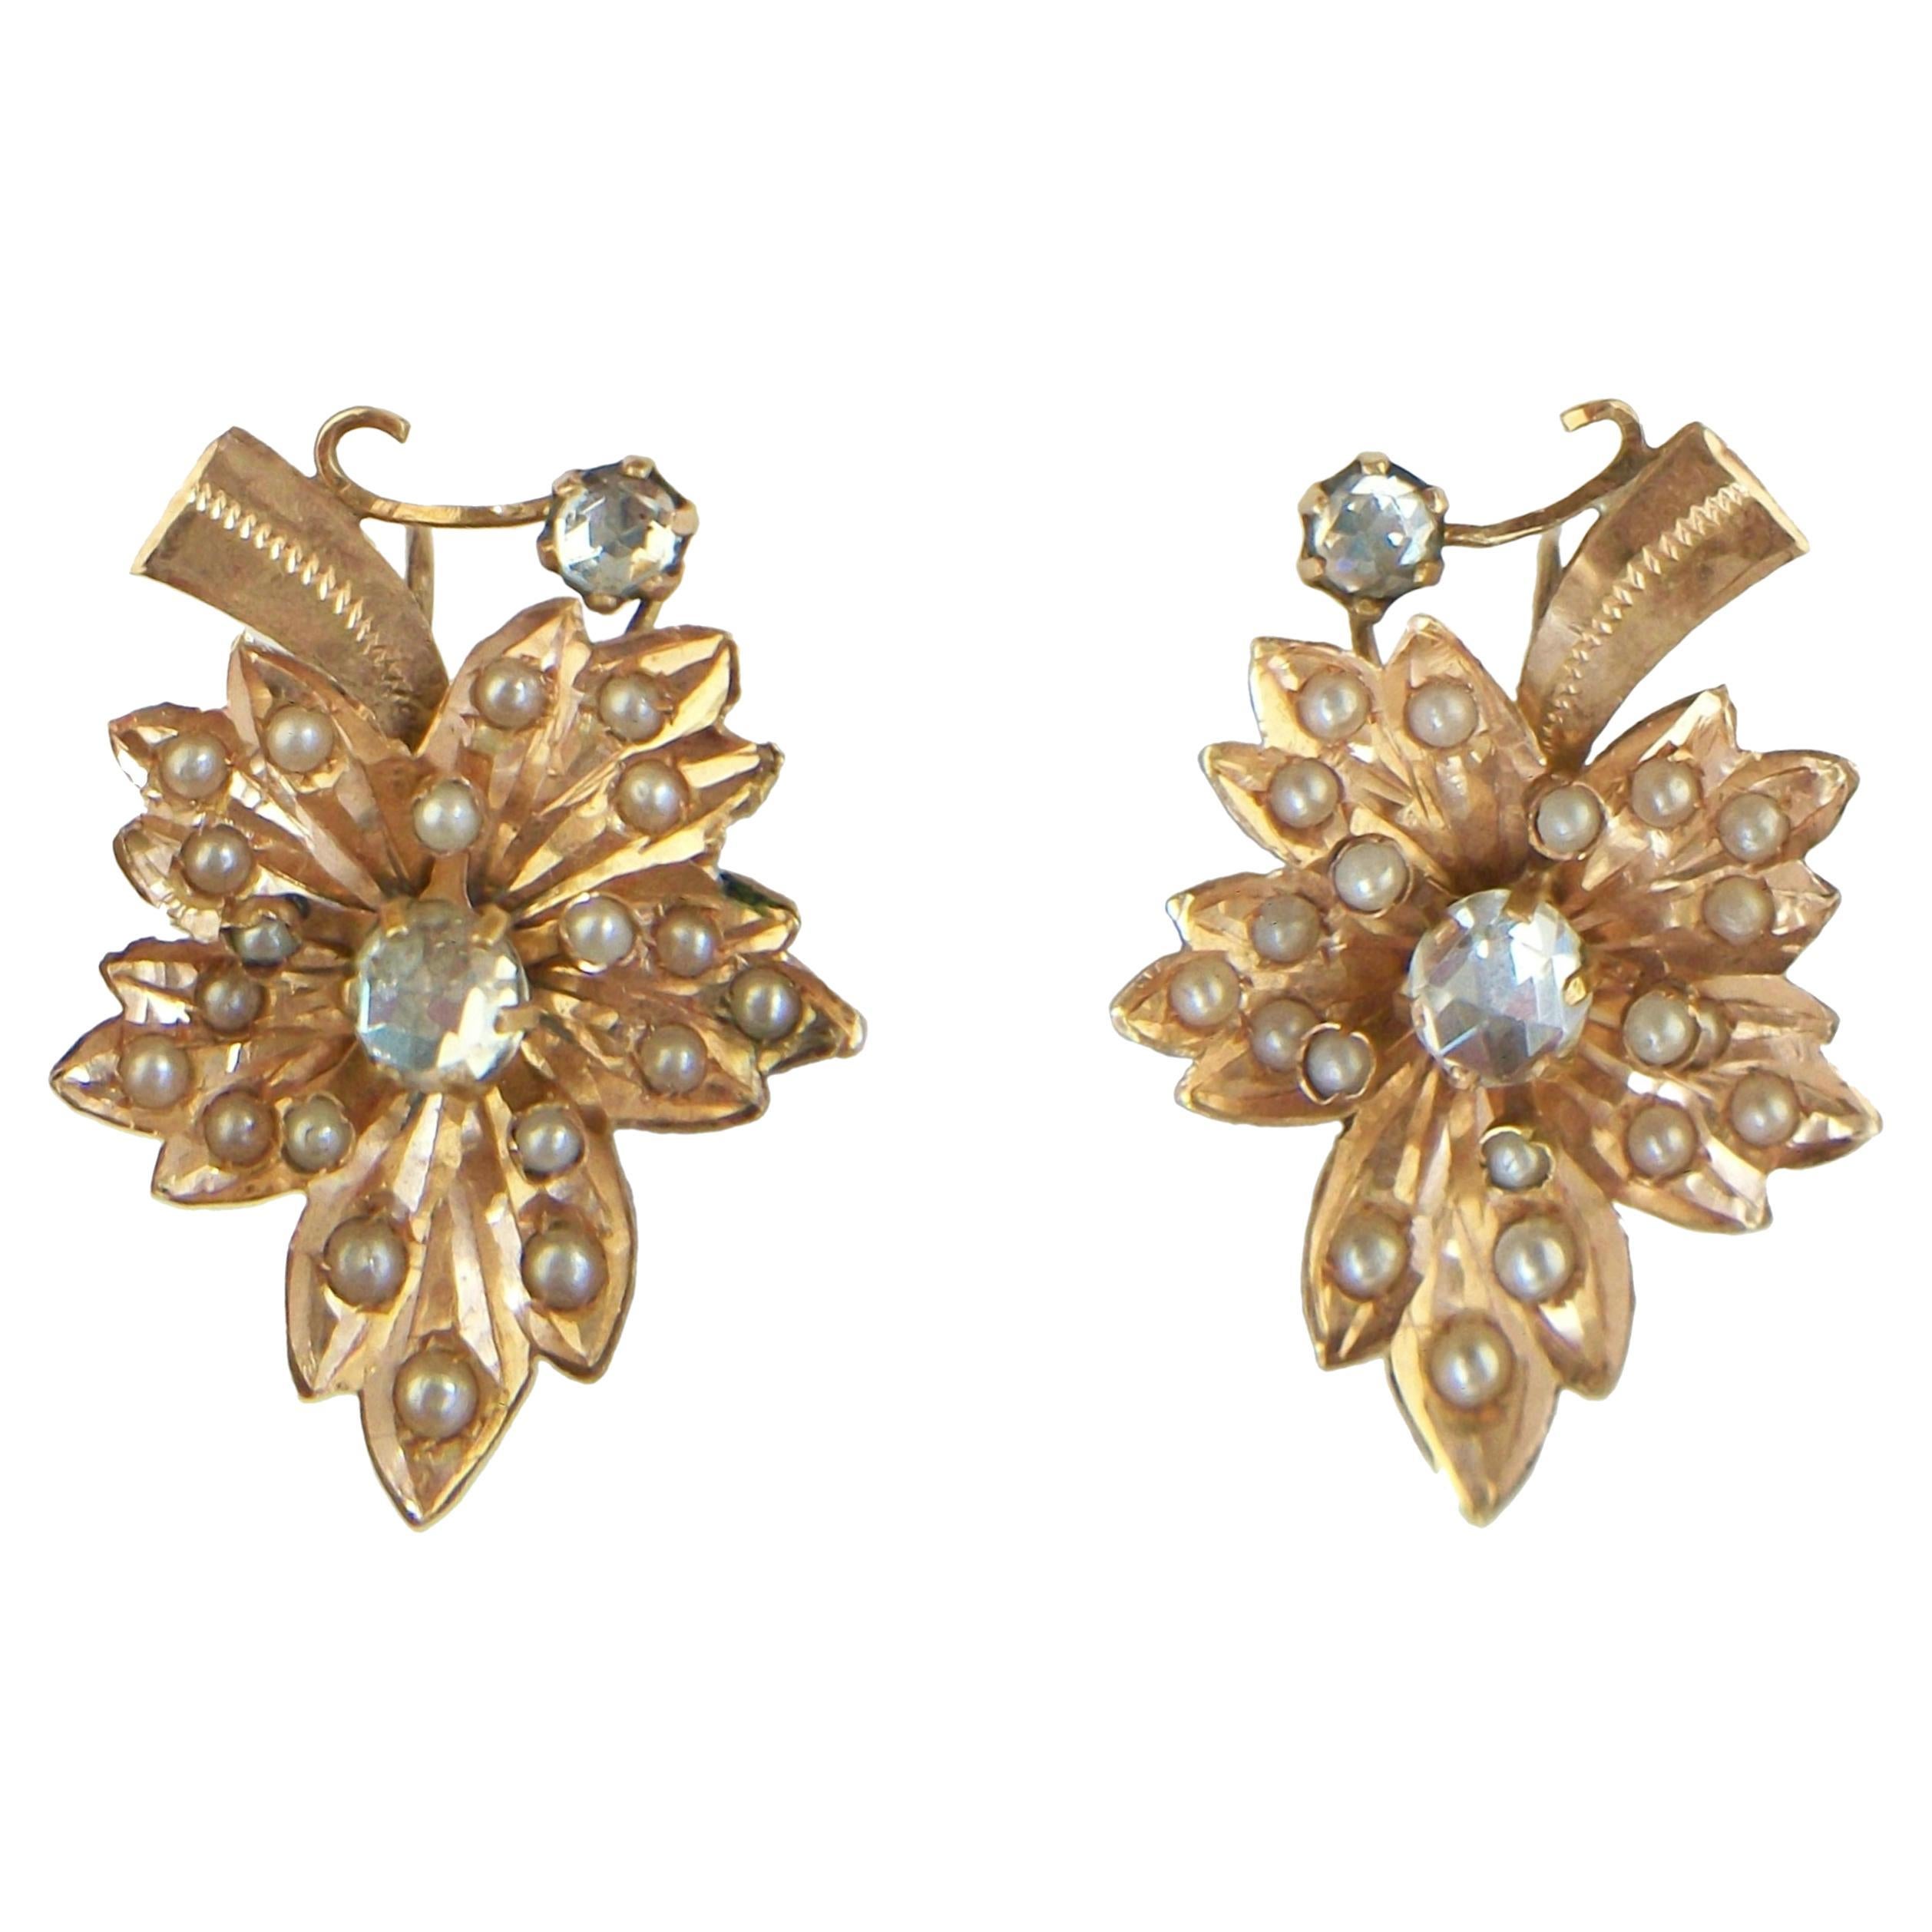 Boucles d'oreilles « feuille » victoriennes en or 14 carats avec perles de rocaille et pâte - E.U. - vers 1880